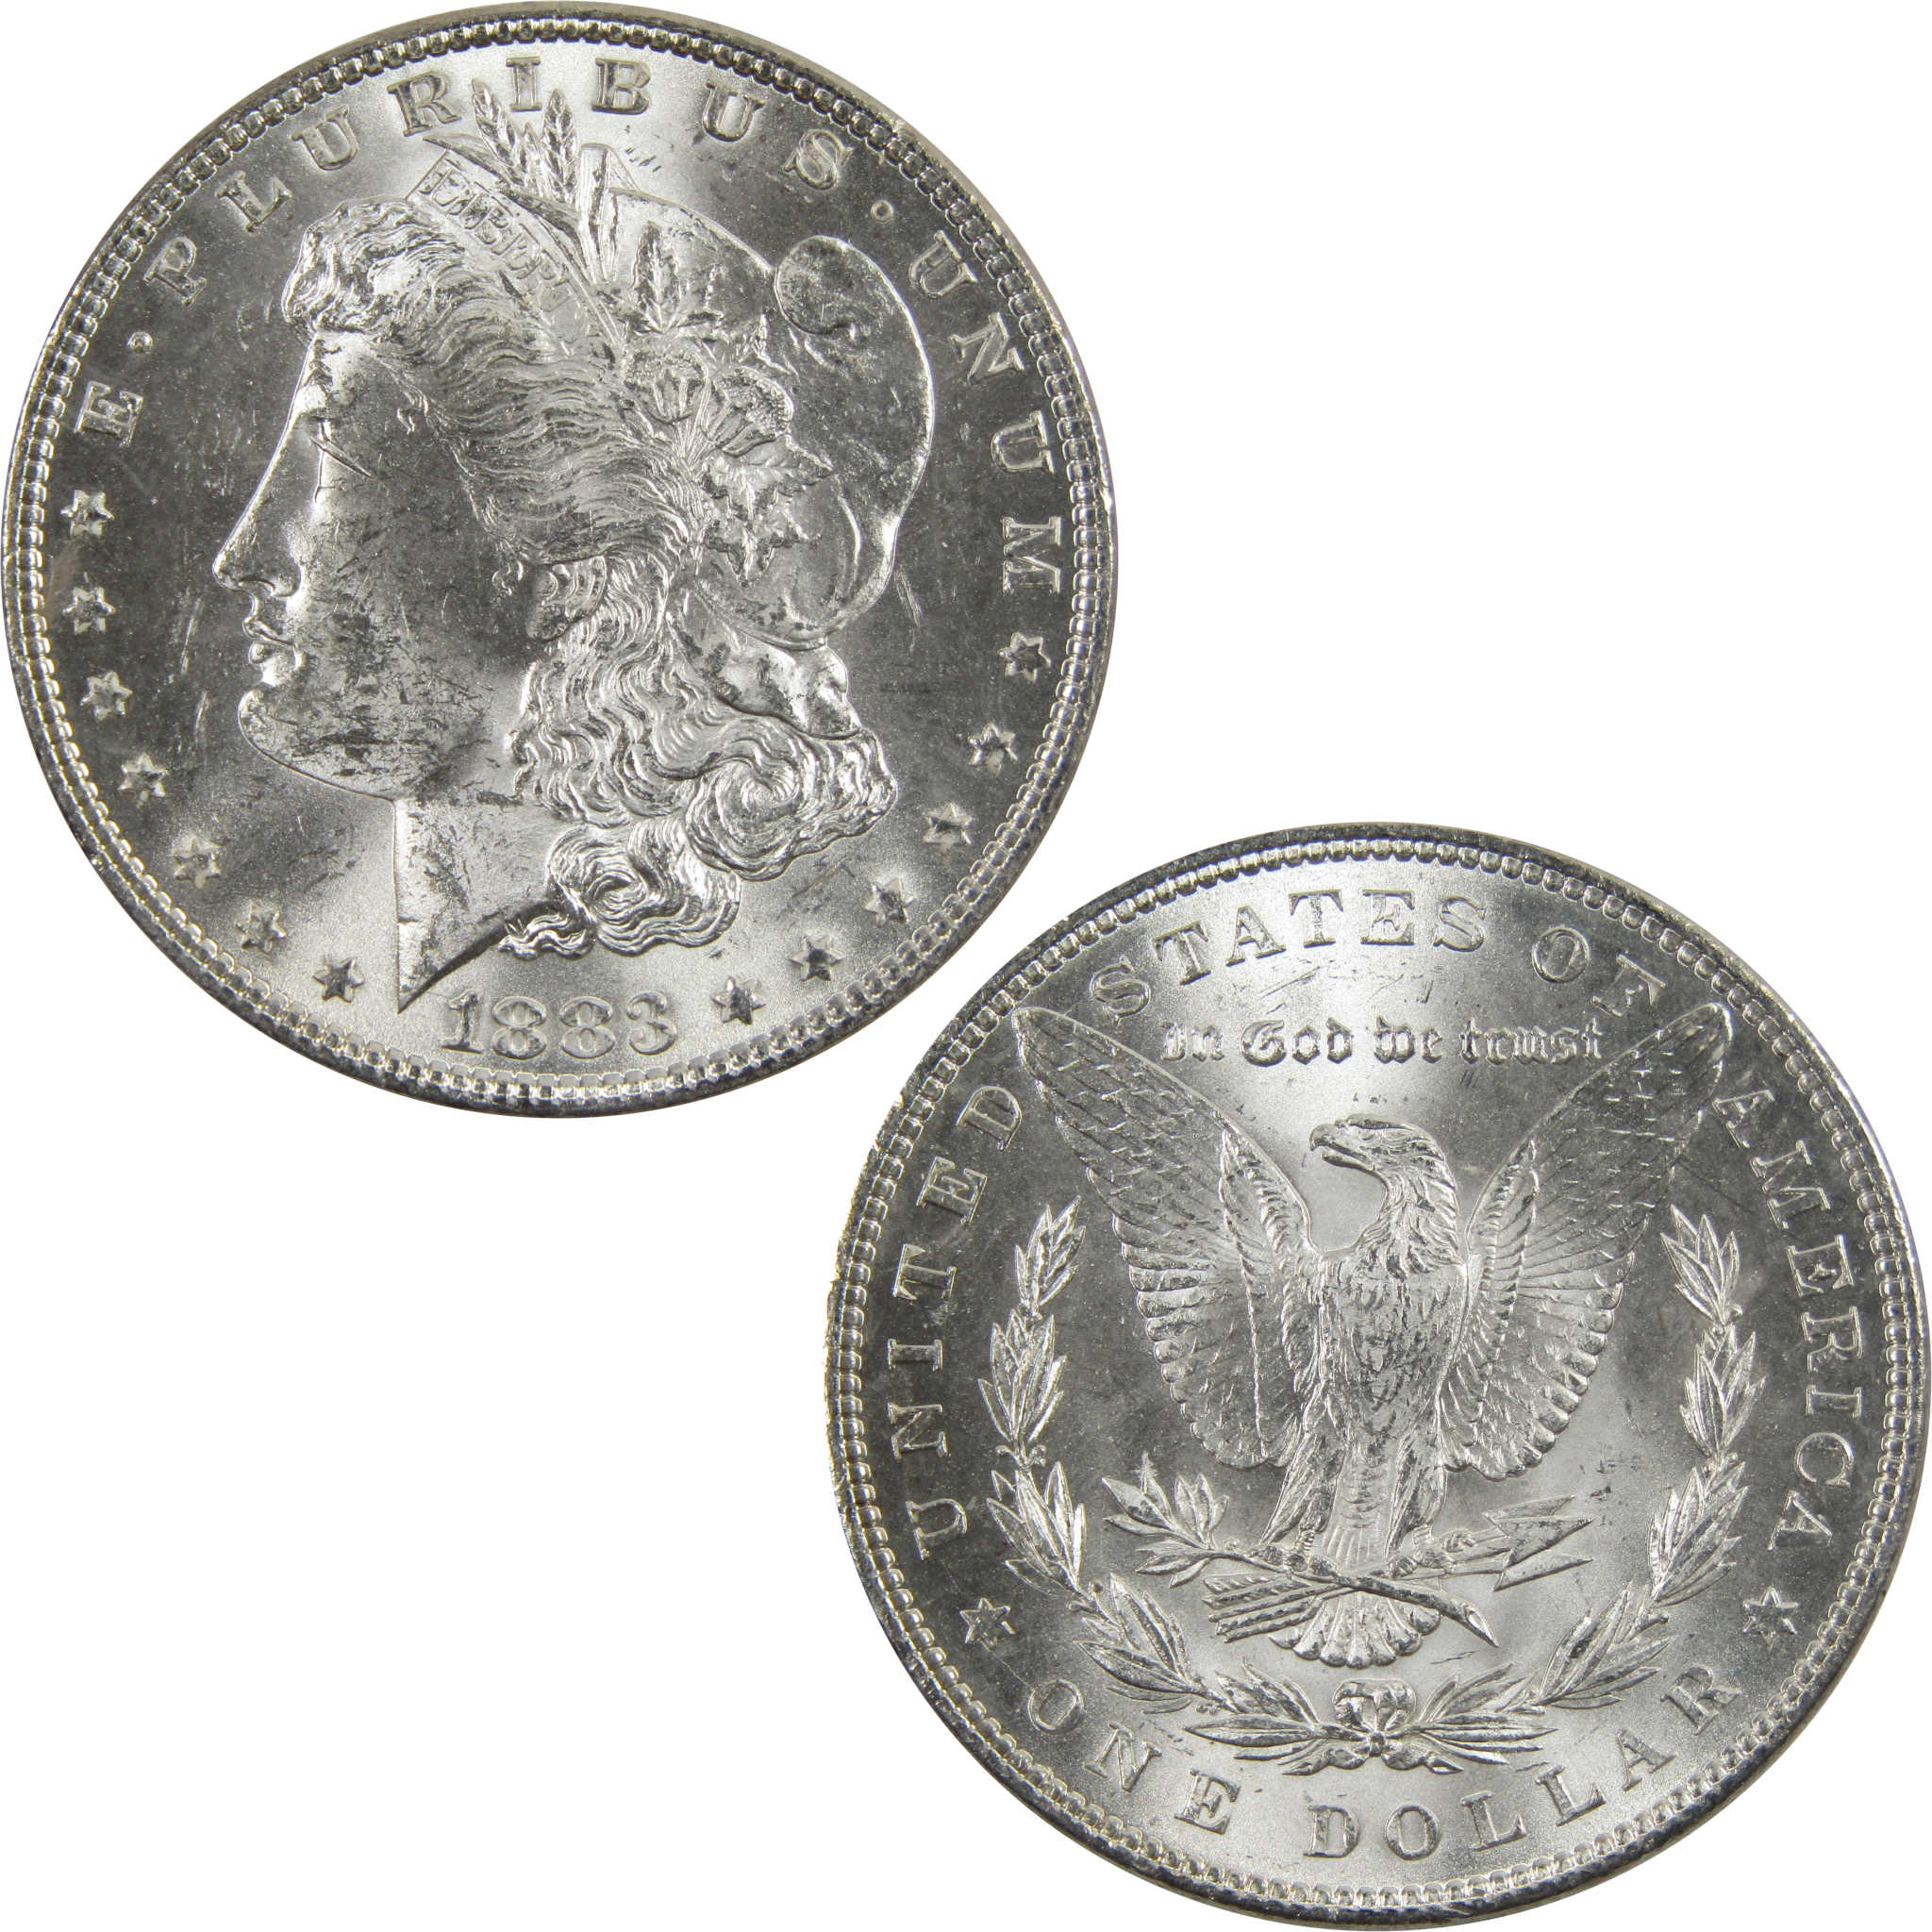 1883 Morgan Dollar BU Uncirculated 90% Silver $1 Coin SKU:I5173 - Morgan coin - Morgan silver dollar - Morgan silver dollar for sale - Profile Coins &amp; Collectibles